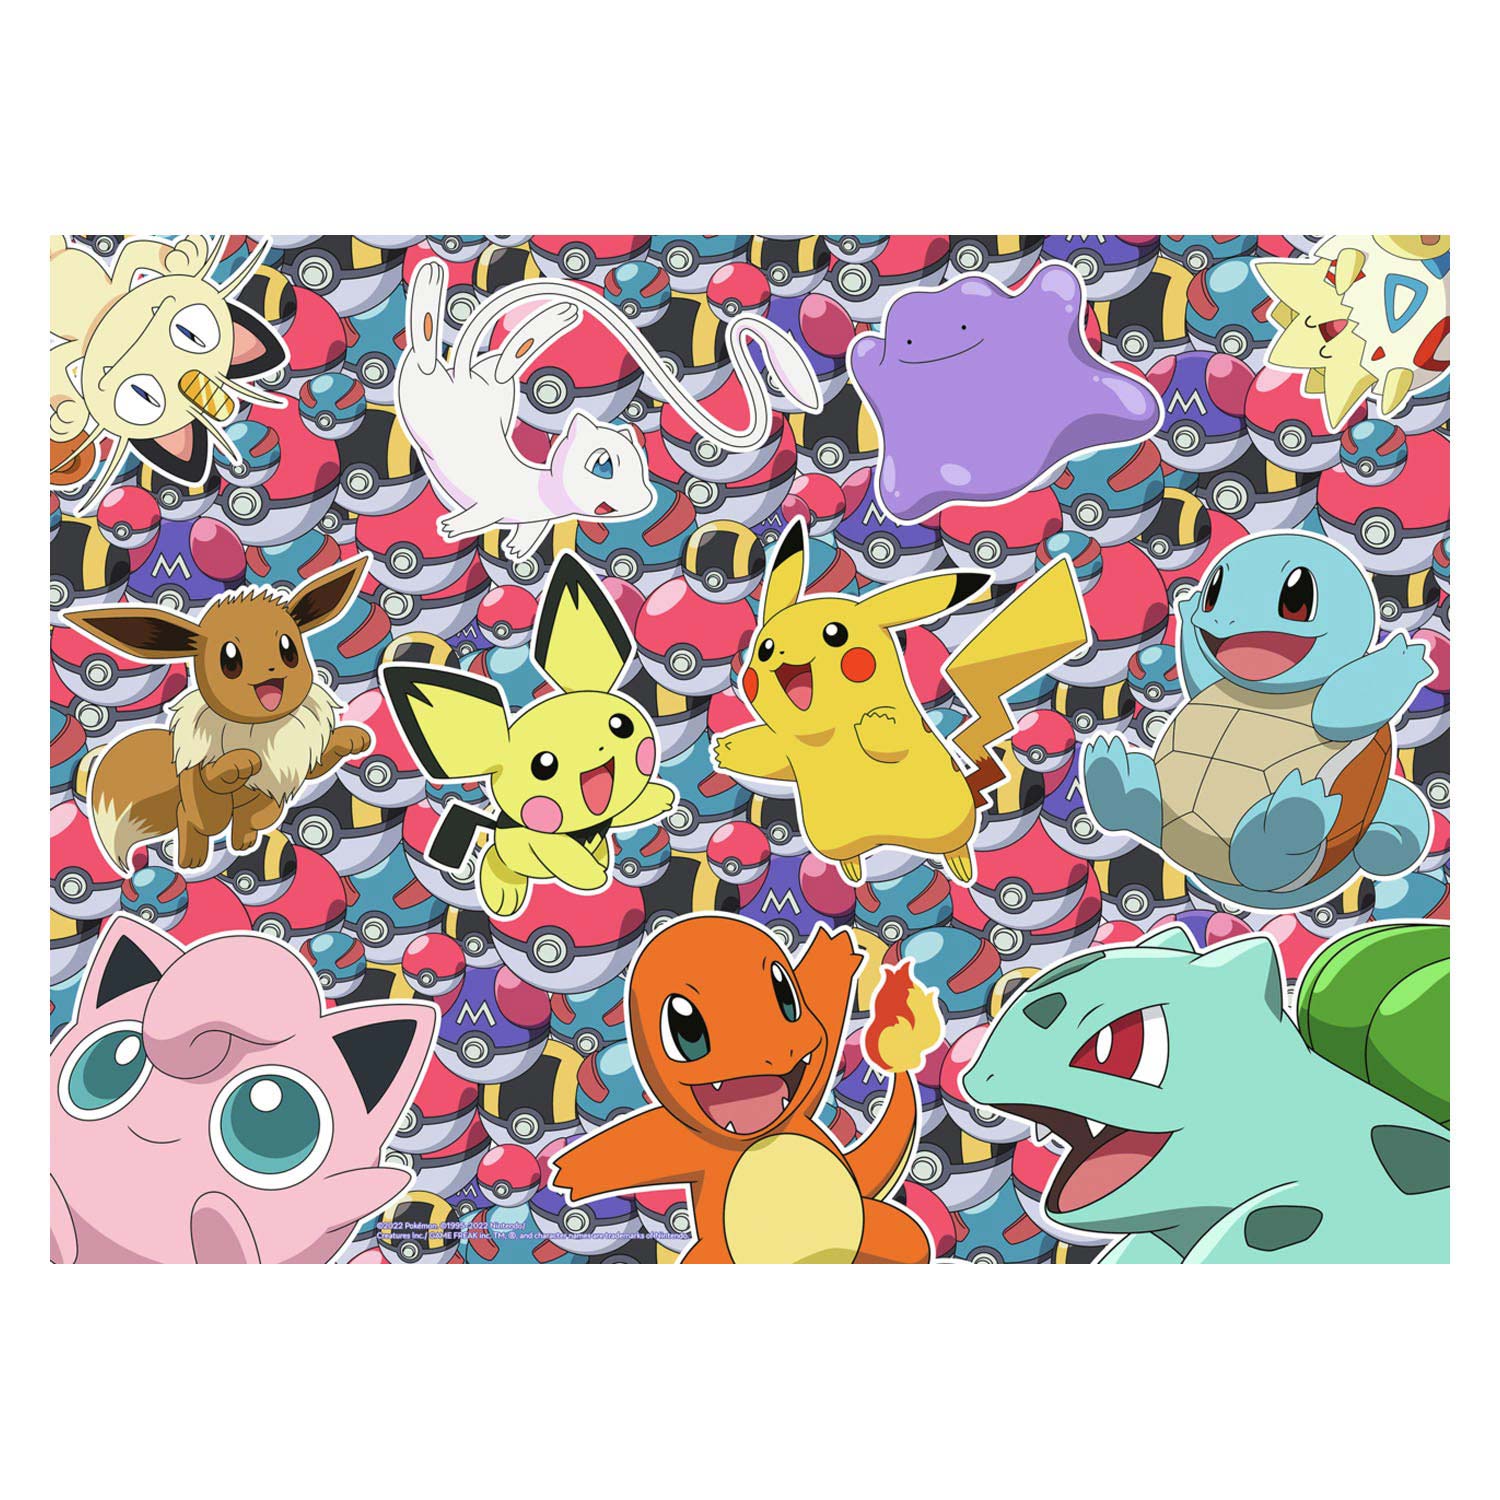 Puzzle Pokémon XXL, 100 pièces.